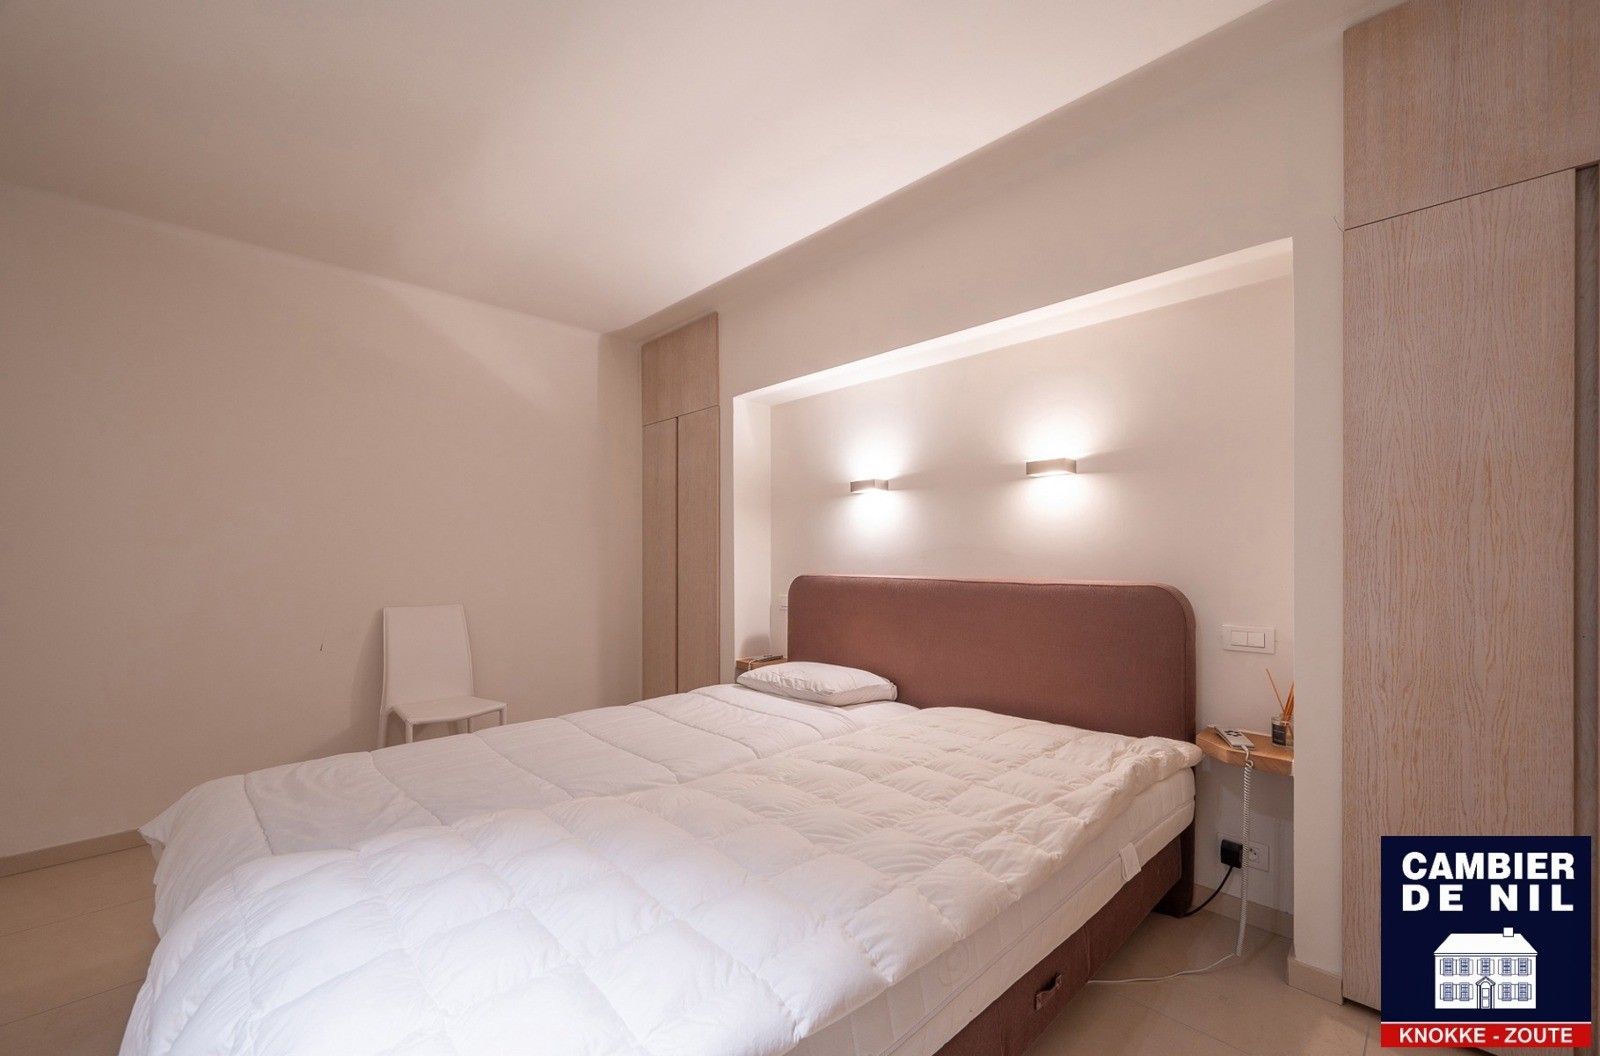 MEUBLÉ : Appartement spacieux avec vue mer et 4 chambres à coucher à Duinbergen ! 13